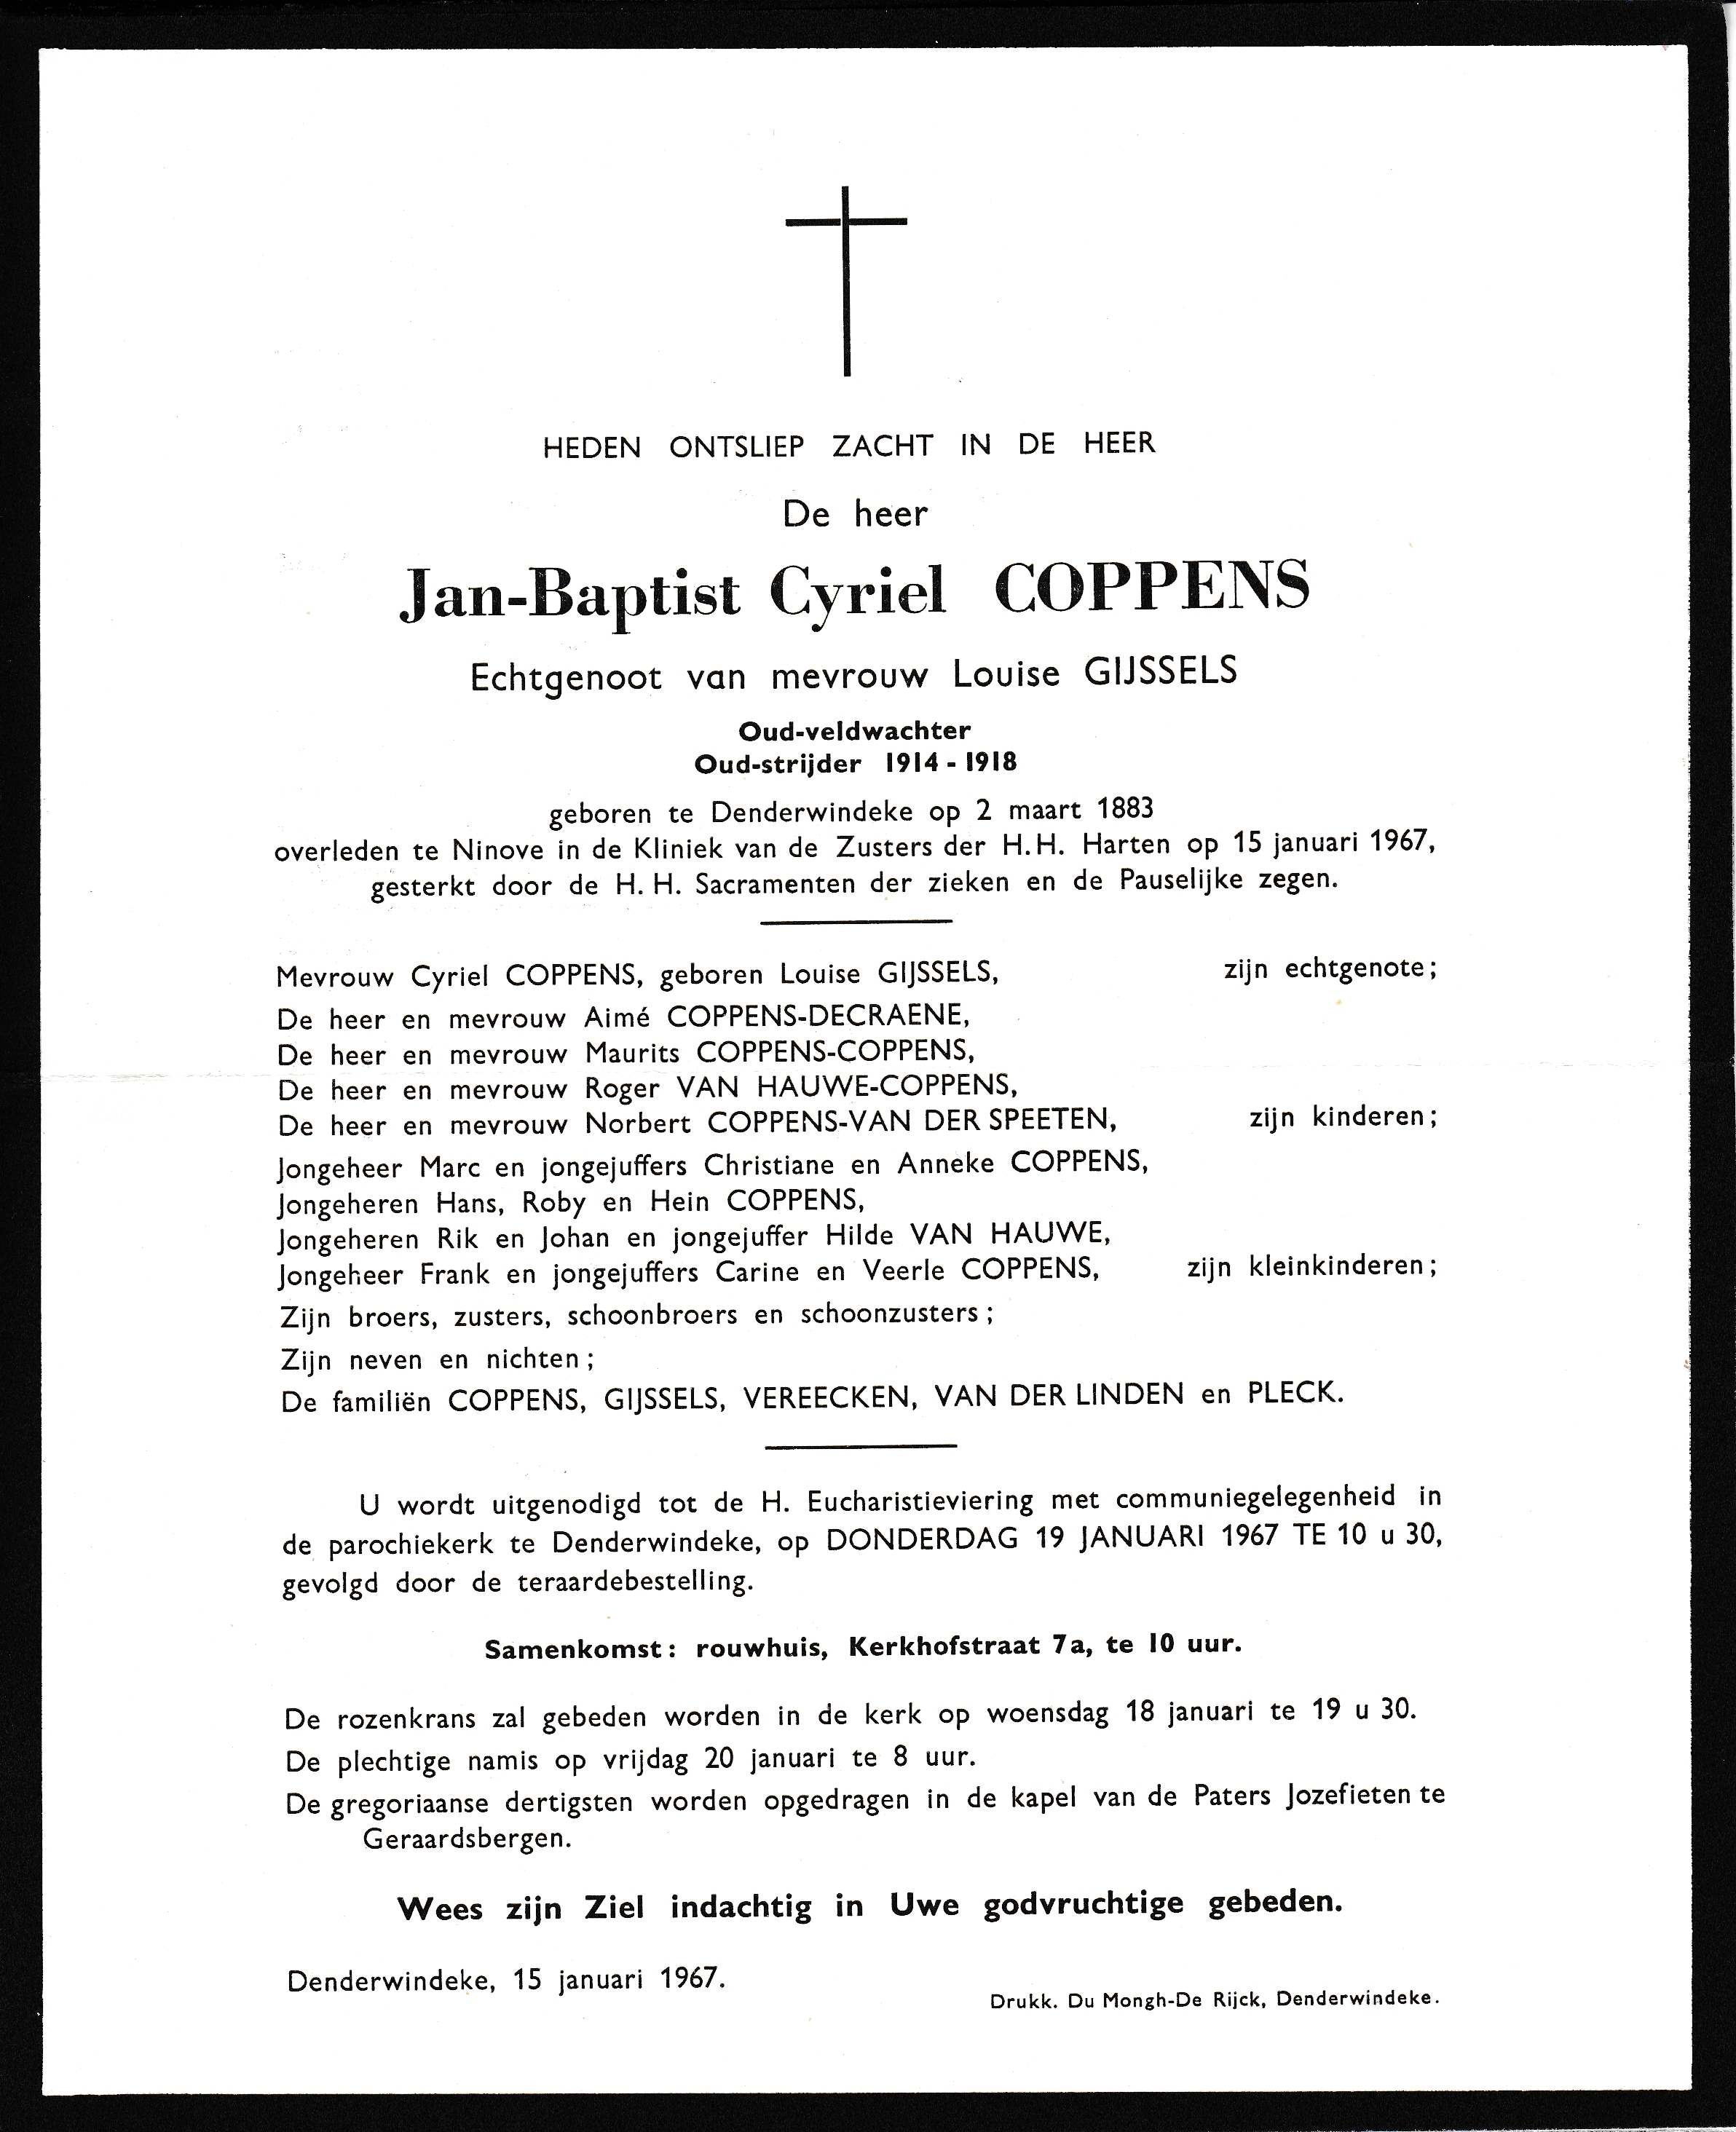 Coppens Jan Baptist Cyriel